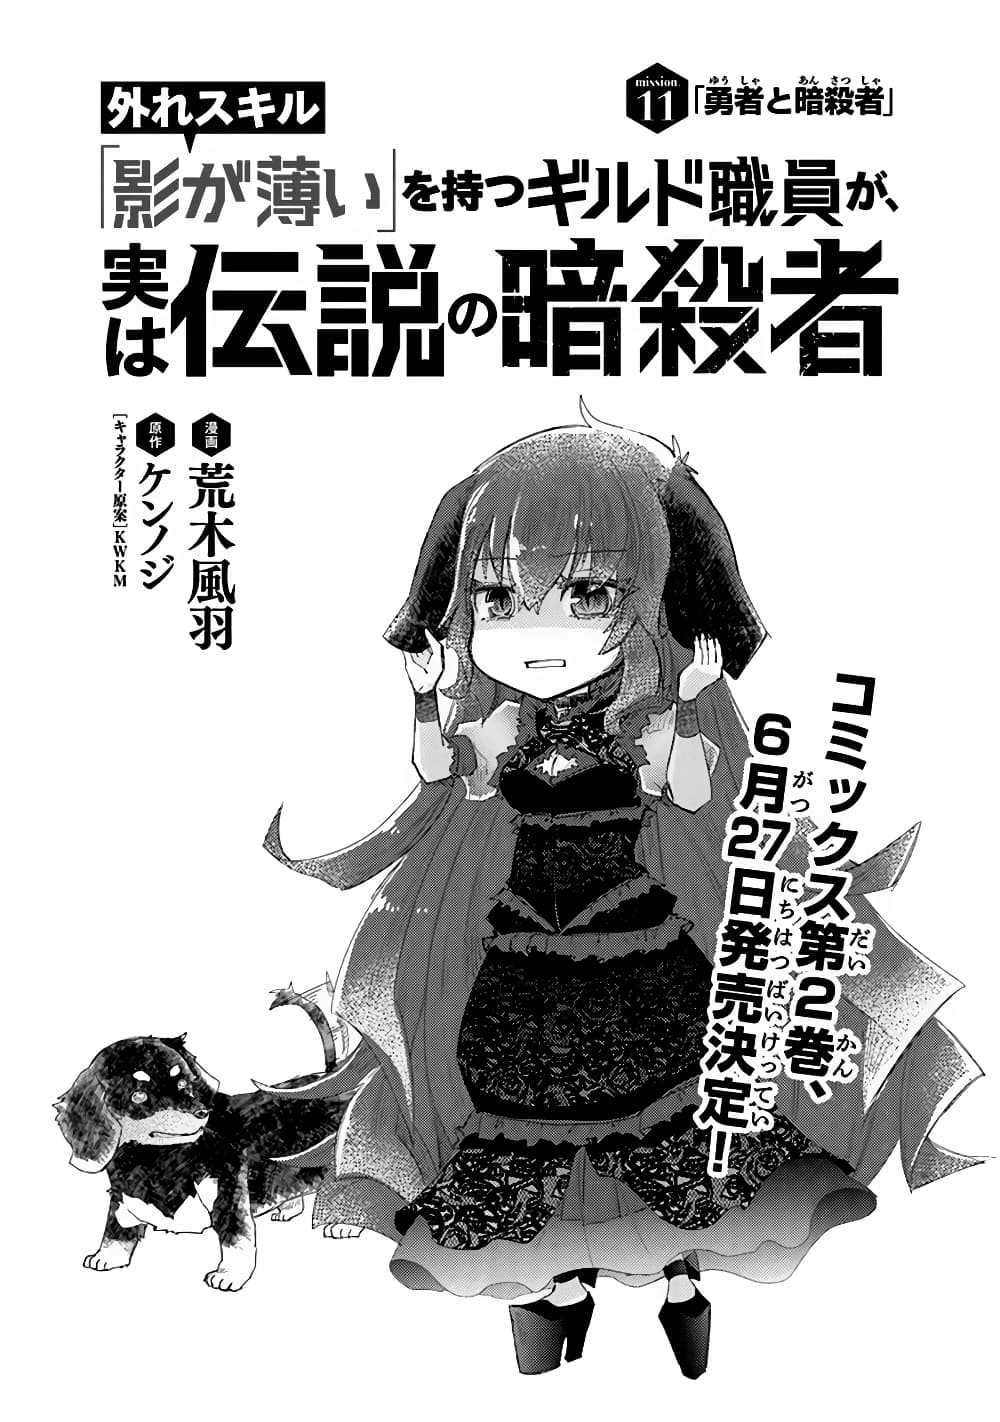 อ่านการ์ตูน Hazure Skill “Kage ga Usui” o Motsu Guild Shokuin ga, Jitsuha Densetsu no Ansatsusha 11 ภาพที่ 1